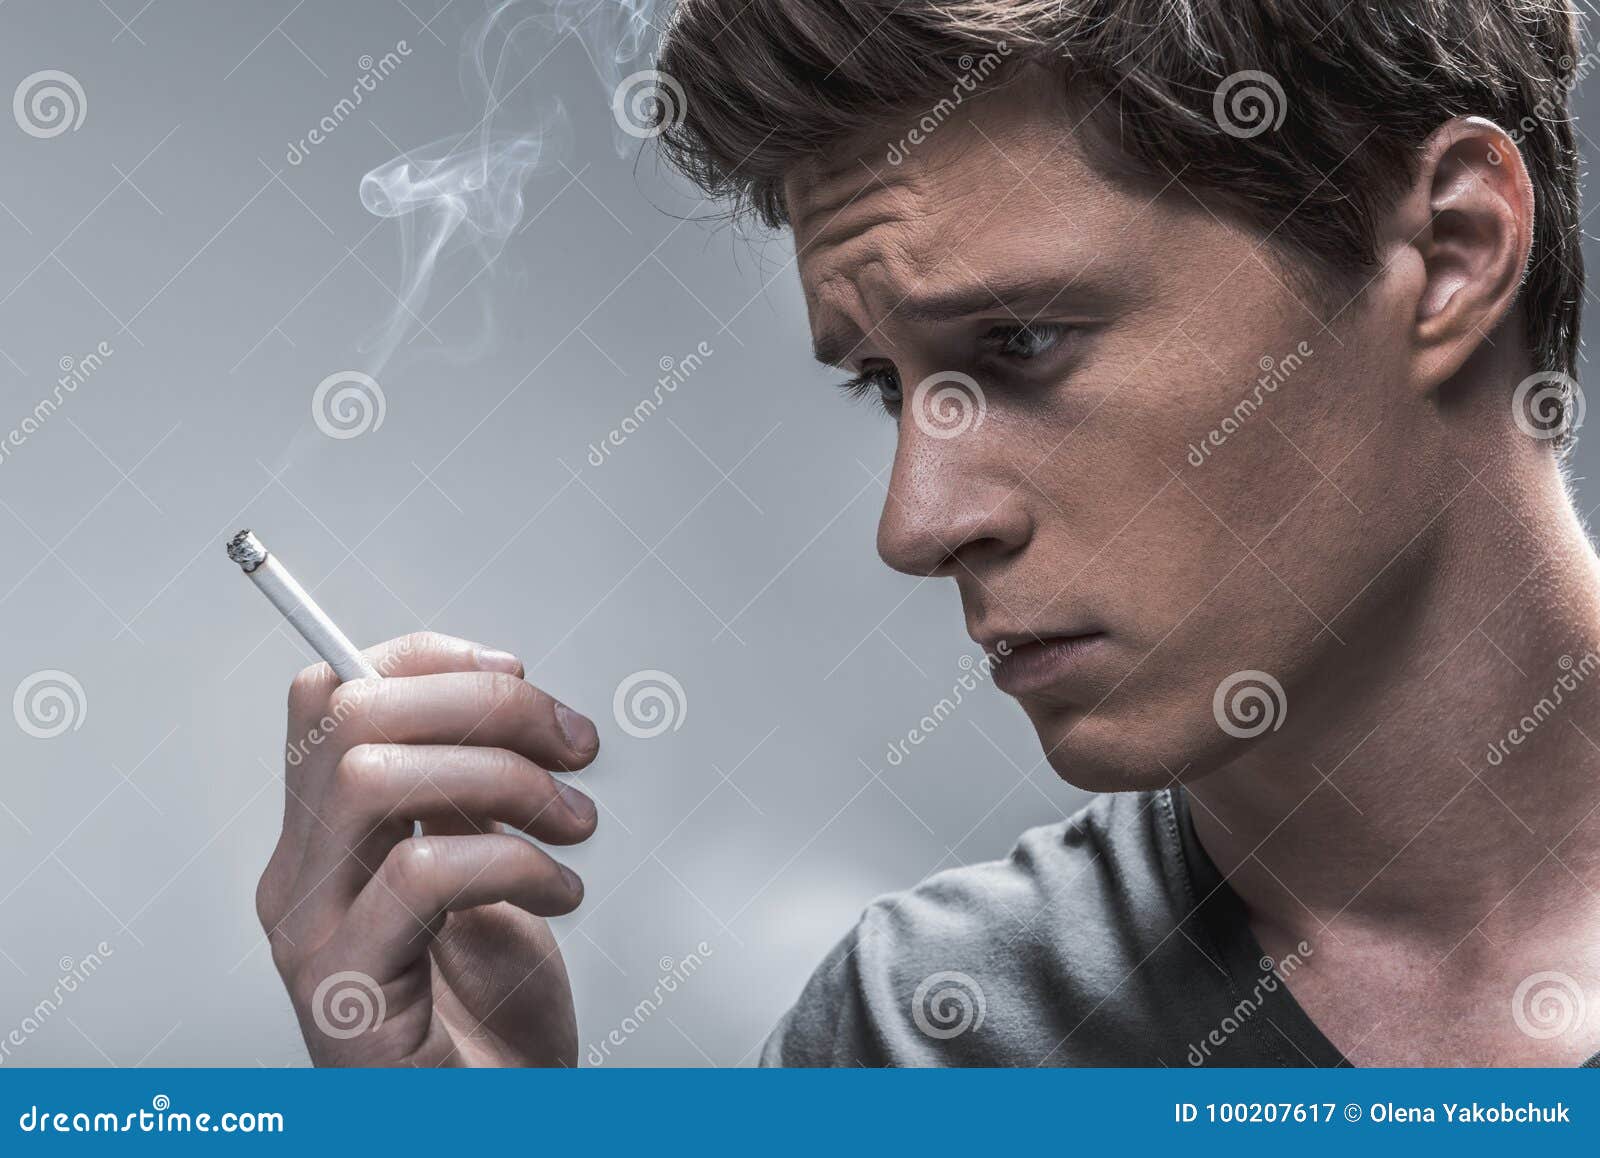 Почему мужчины курят. Парень курит сигарету. Курение молодых людей. Напряженный человек с сигаретой. Горящая сигарета.